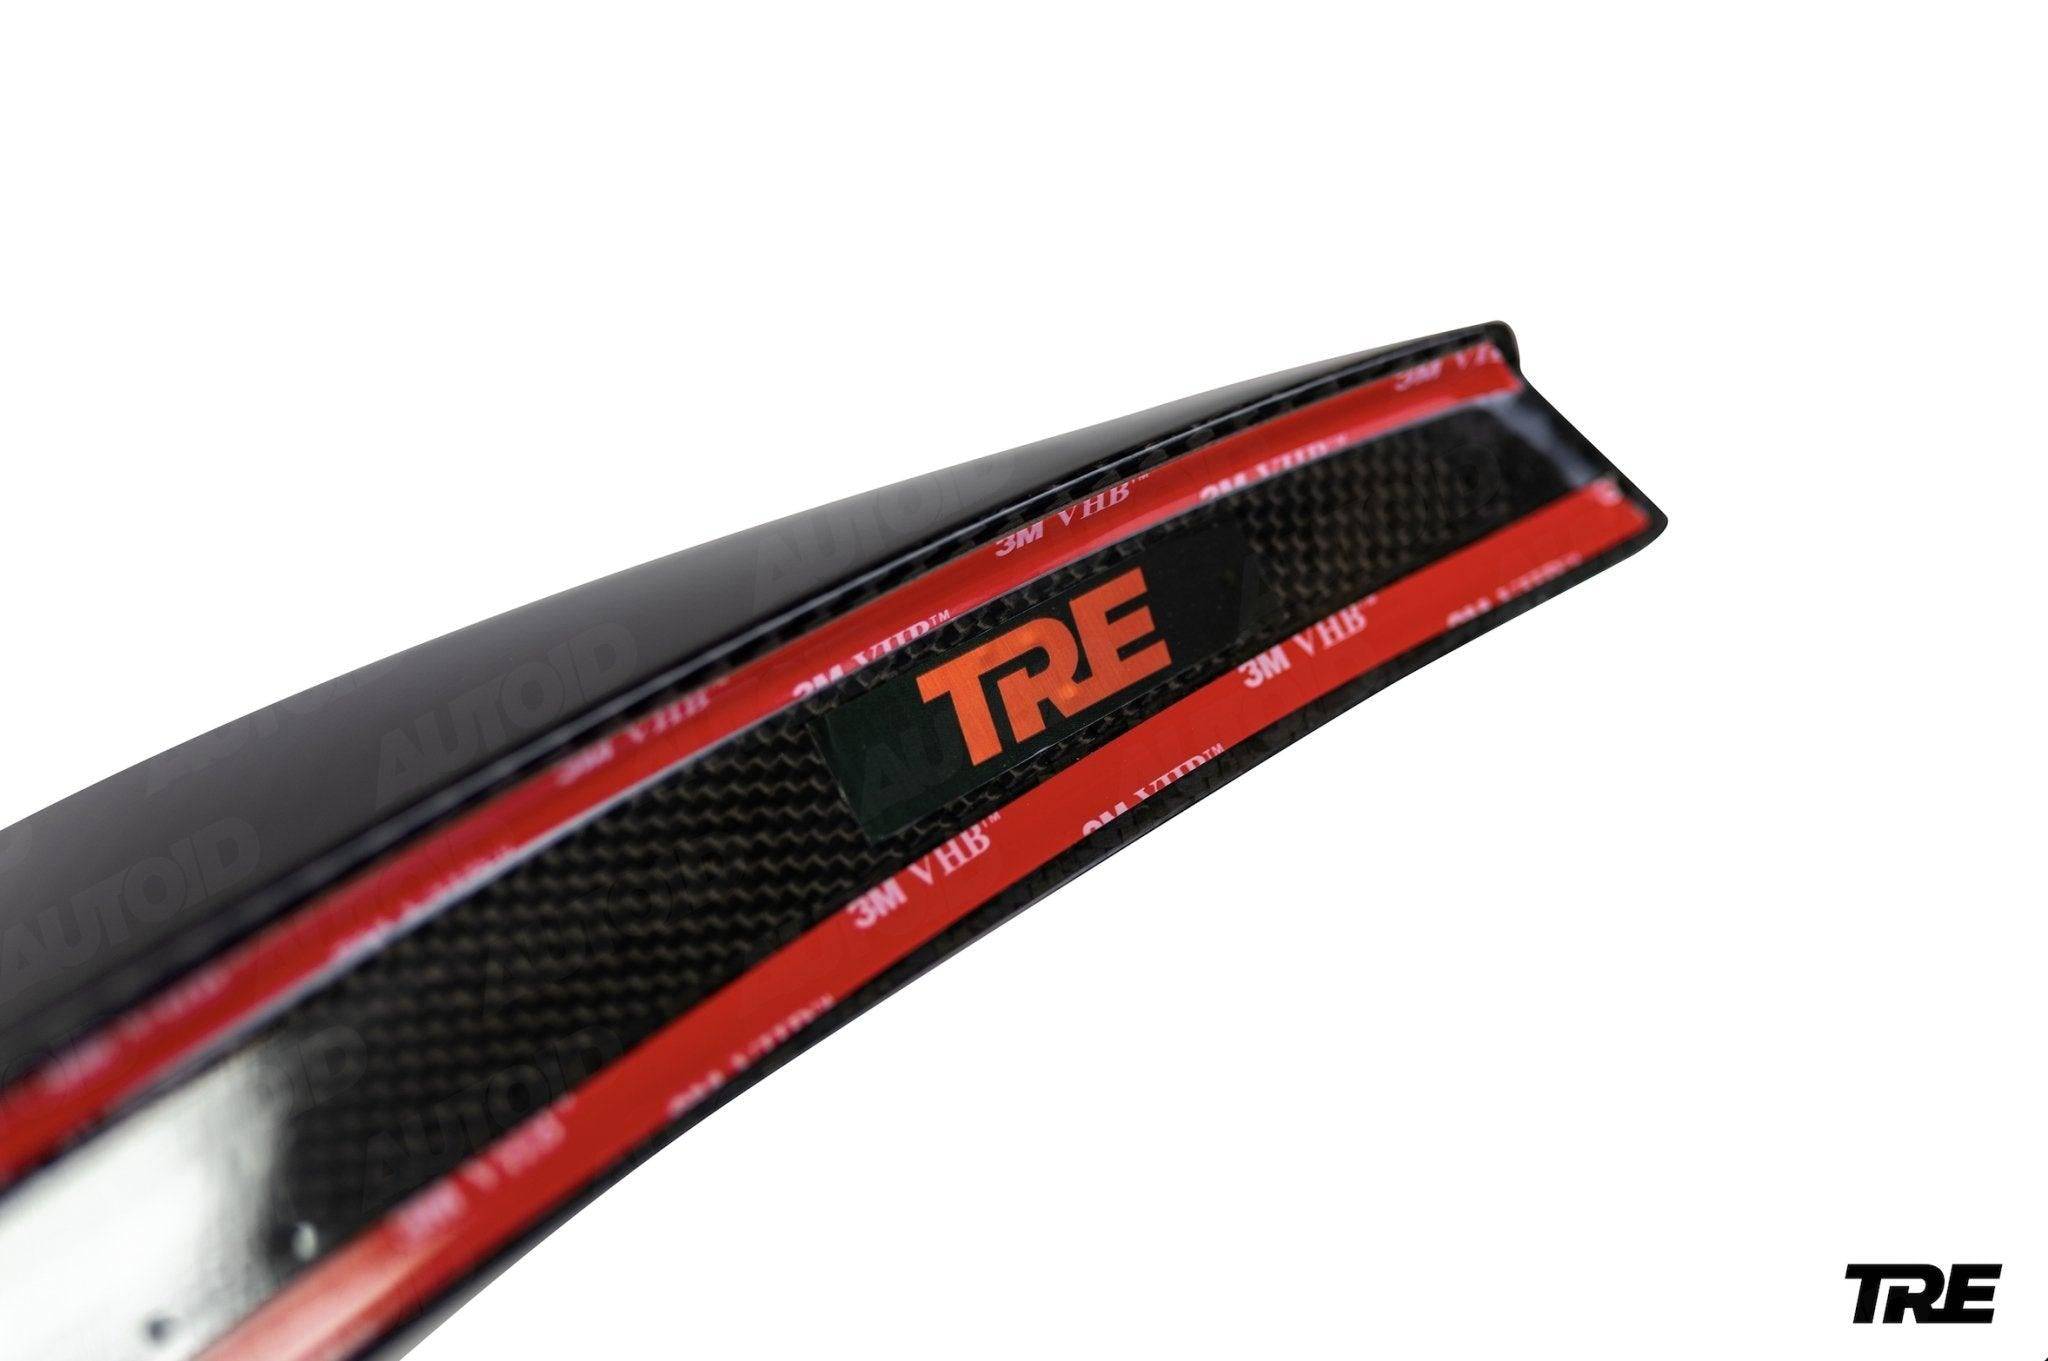 TRE Pre-preg Carbon Fibre Ducktail Rear Spoiler for Audi A3, S3 & RS3 (2021+, 8Y), Rear Spoilers, TRE - AUTOID | Premium Automotive Accessories